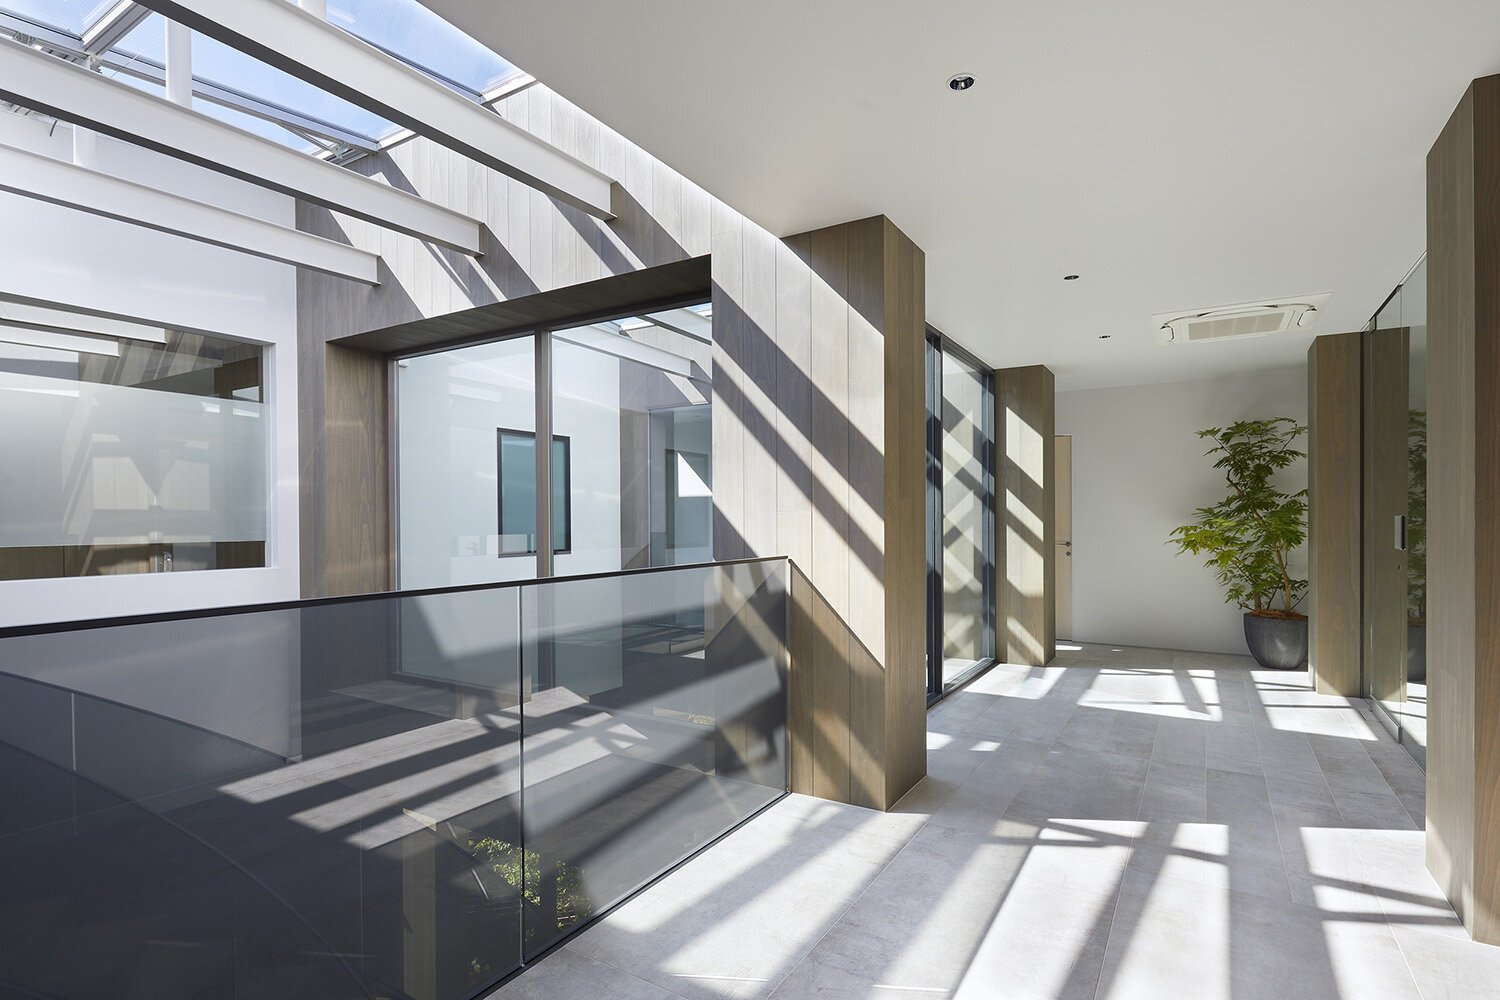  建築家 sinatoシナトの大野力が設計した住宅Shoto S。トップライトから光が注ぐ3階のインテリアデザイン 